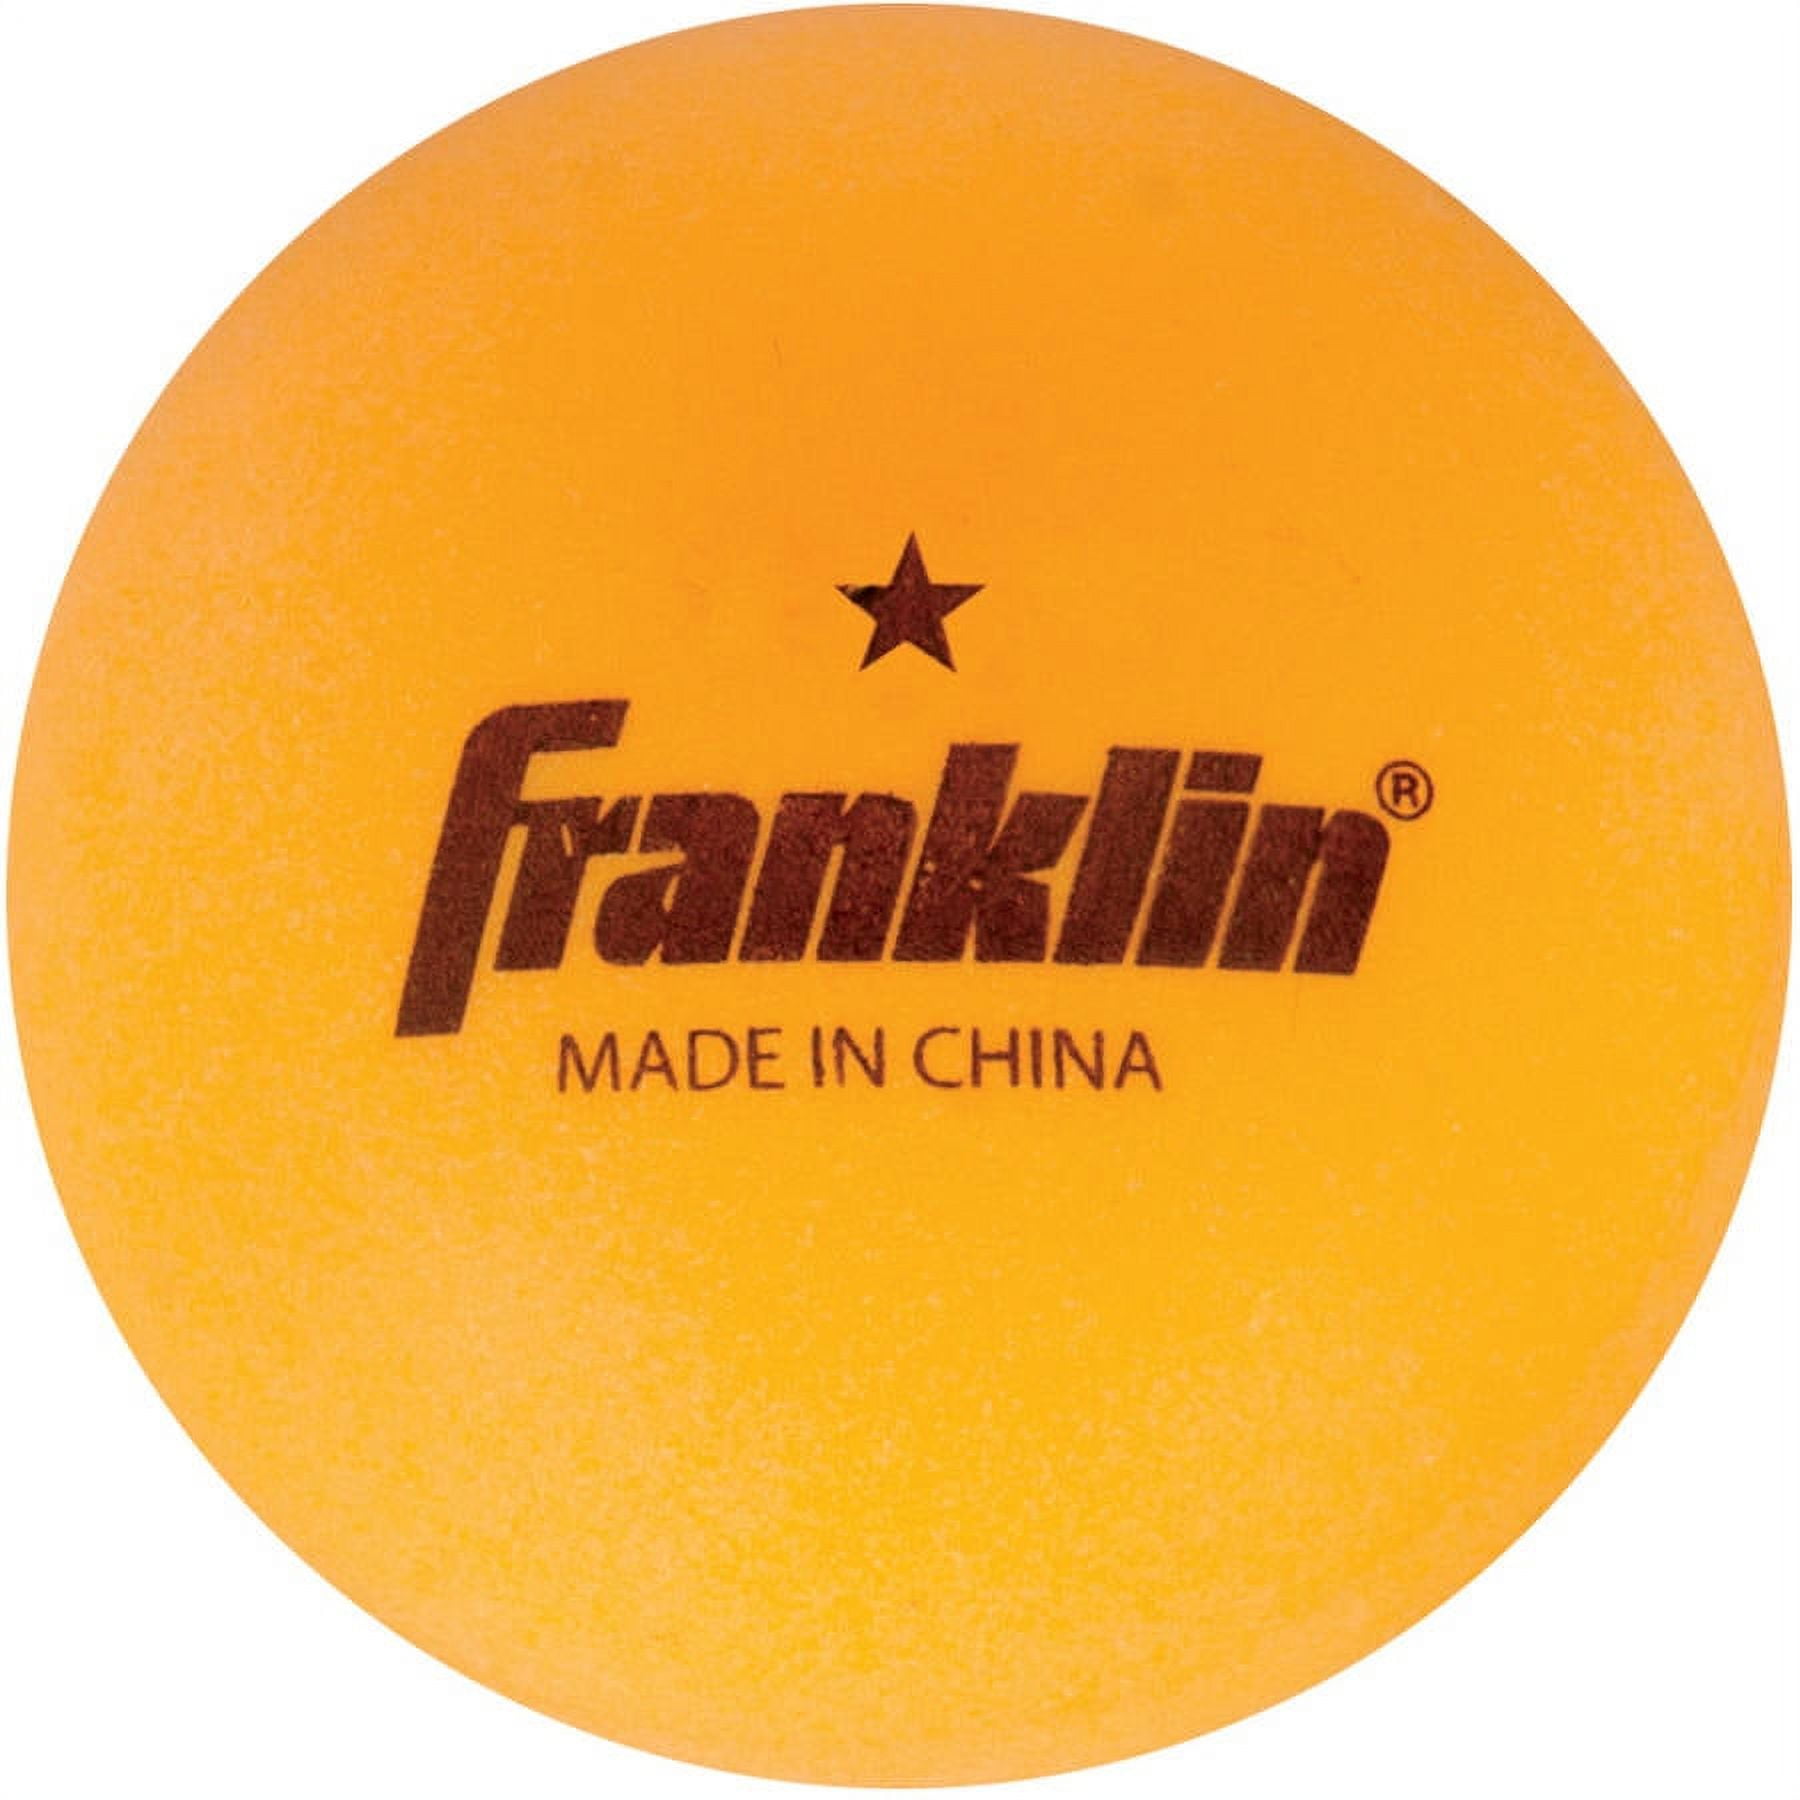 Ping Pong Balls - Orange - 144 per pack